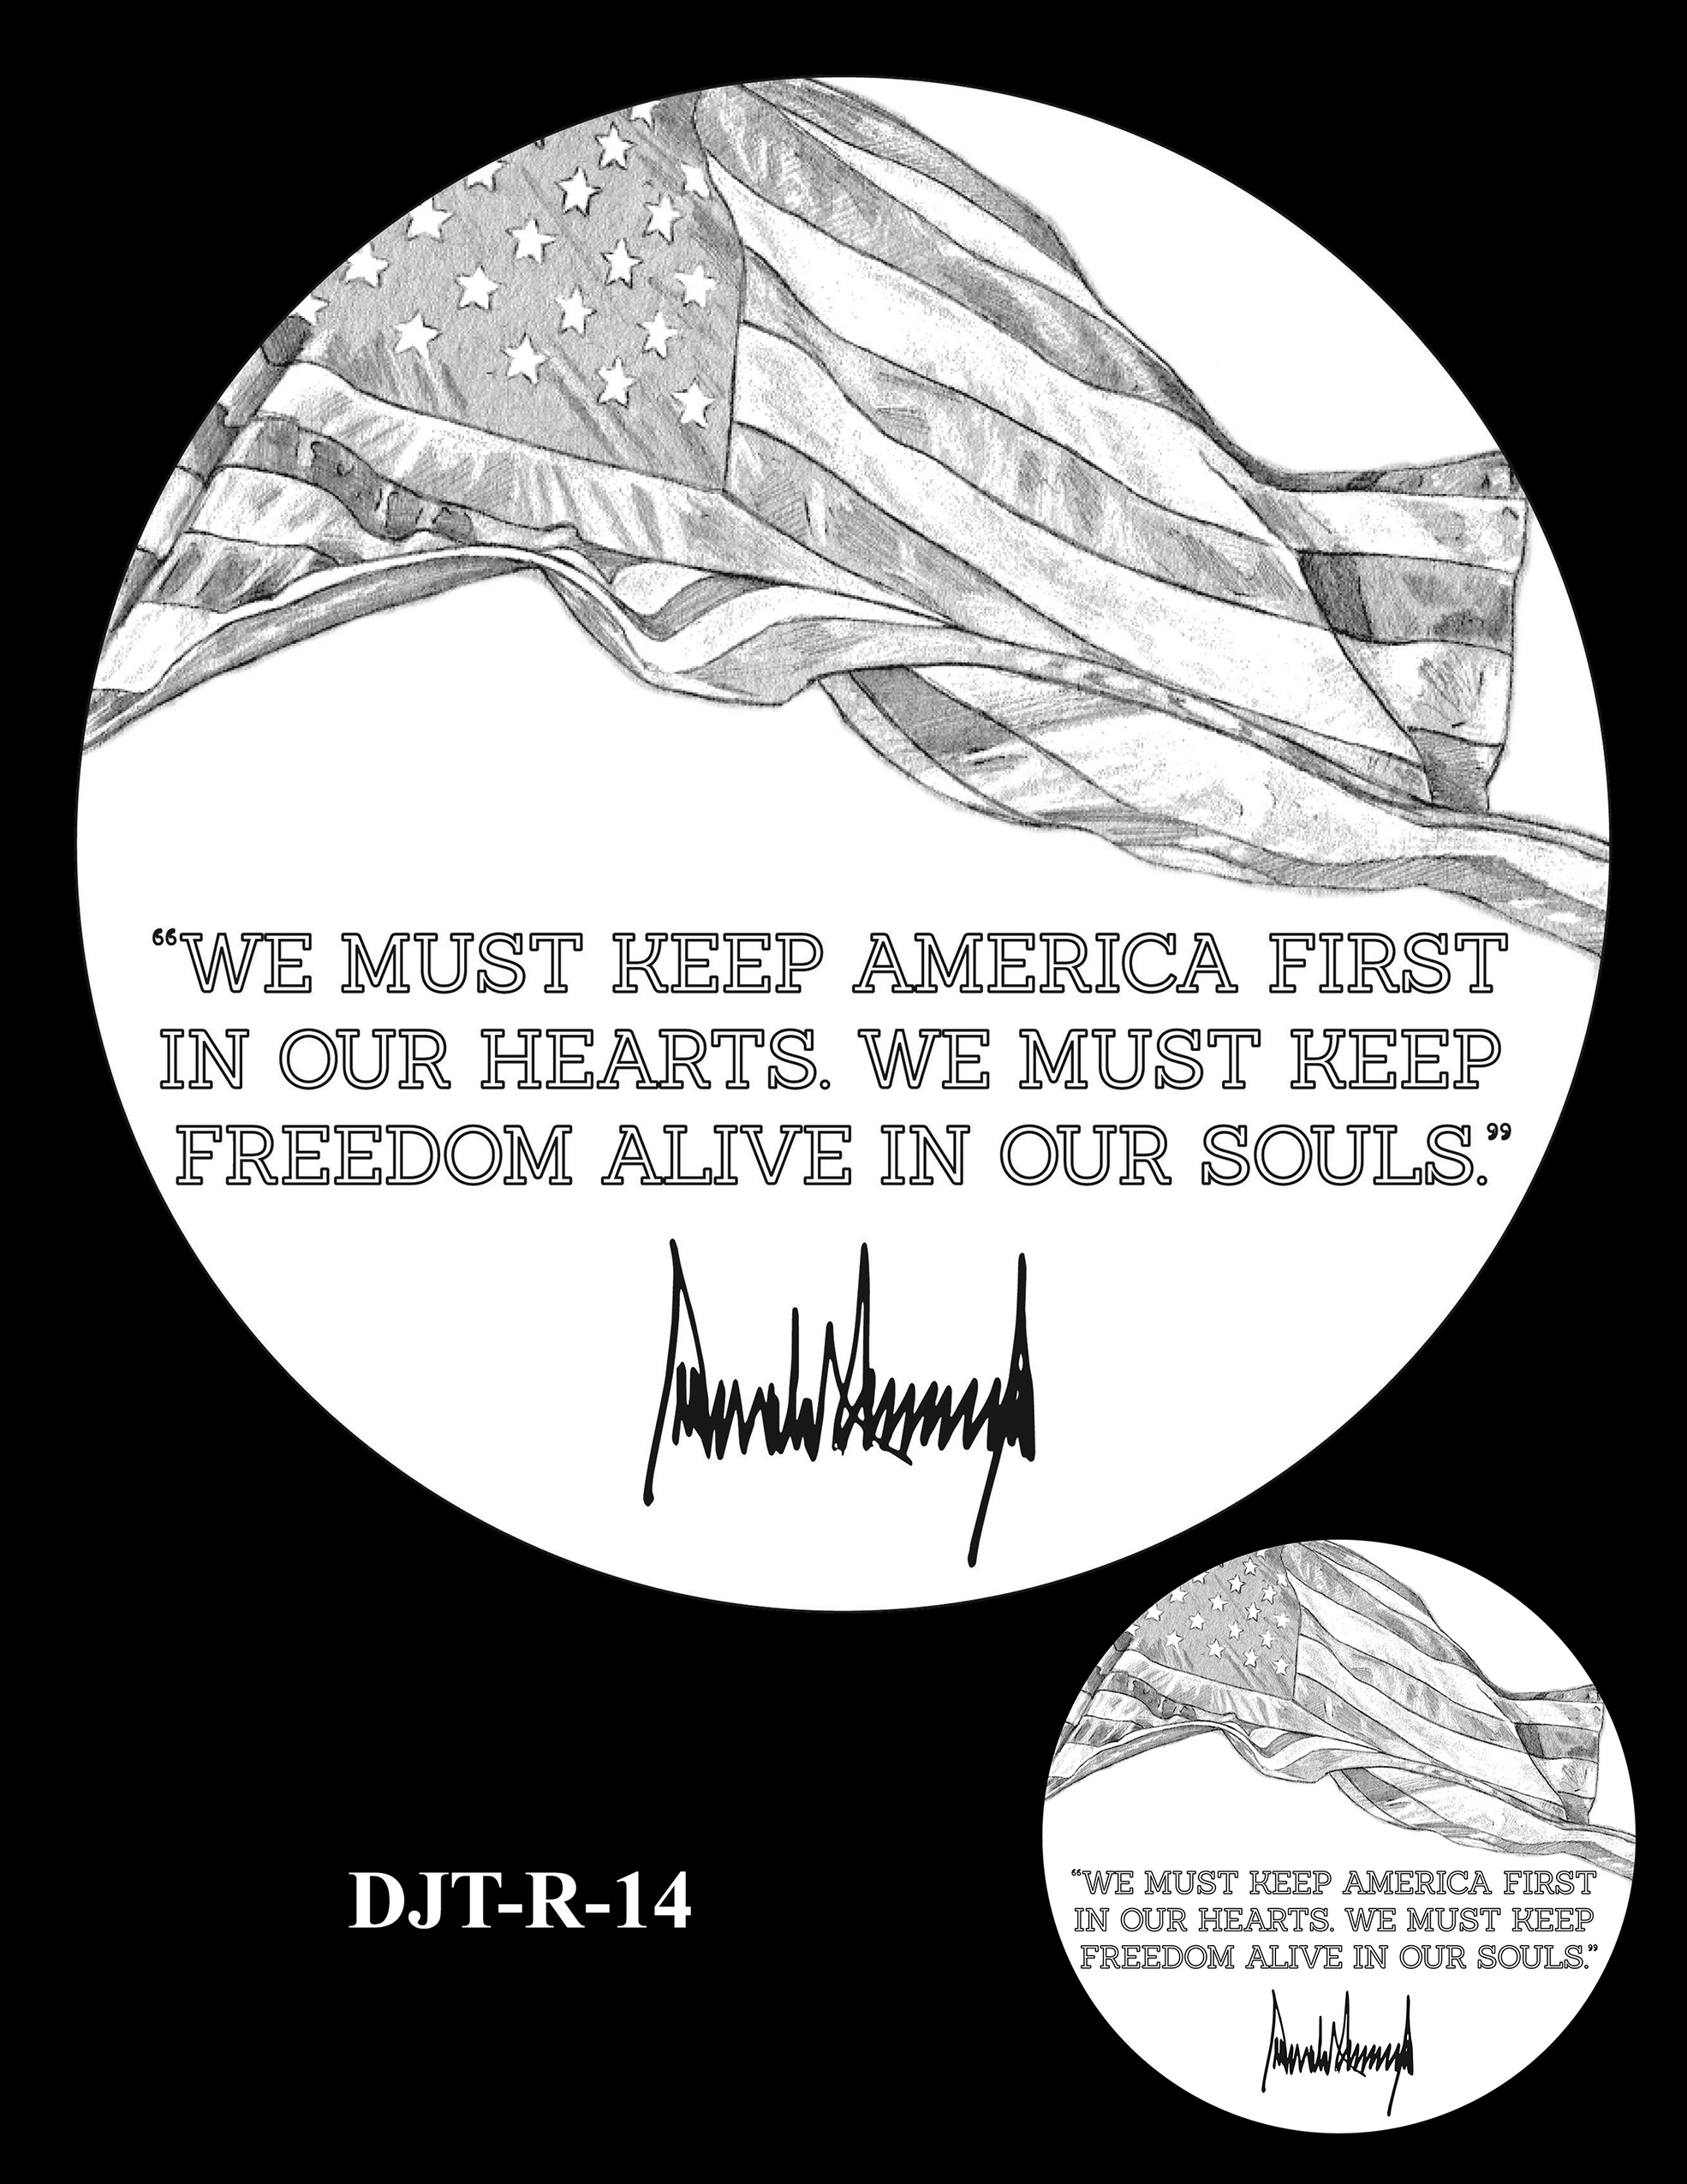 DJT-R-14 -- Donald J. Trump Presidential Medal